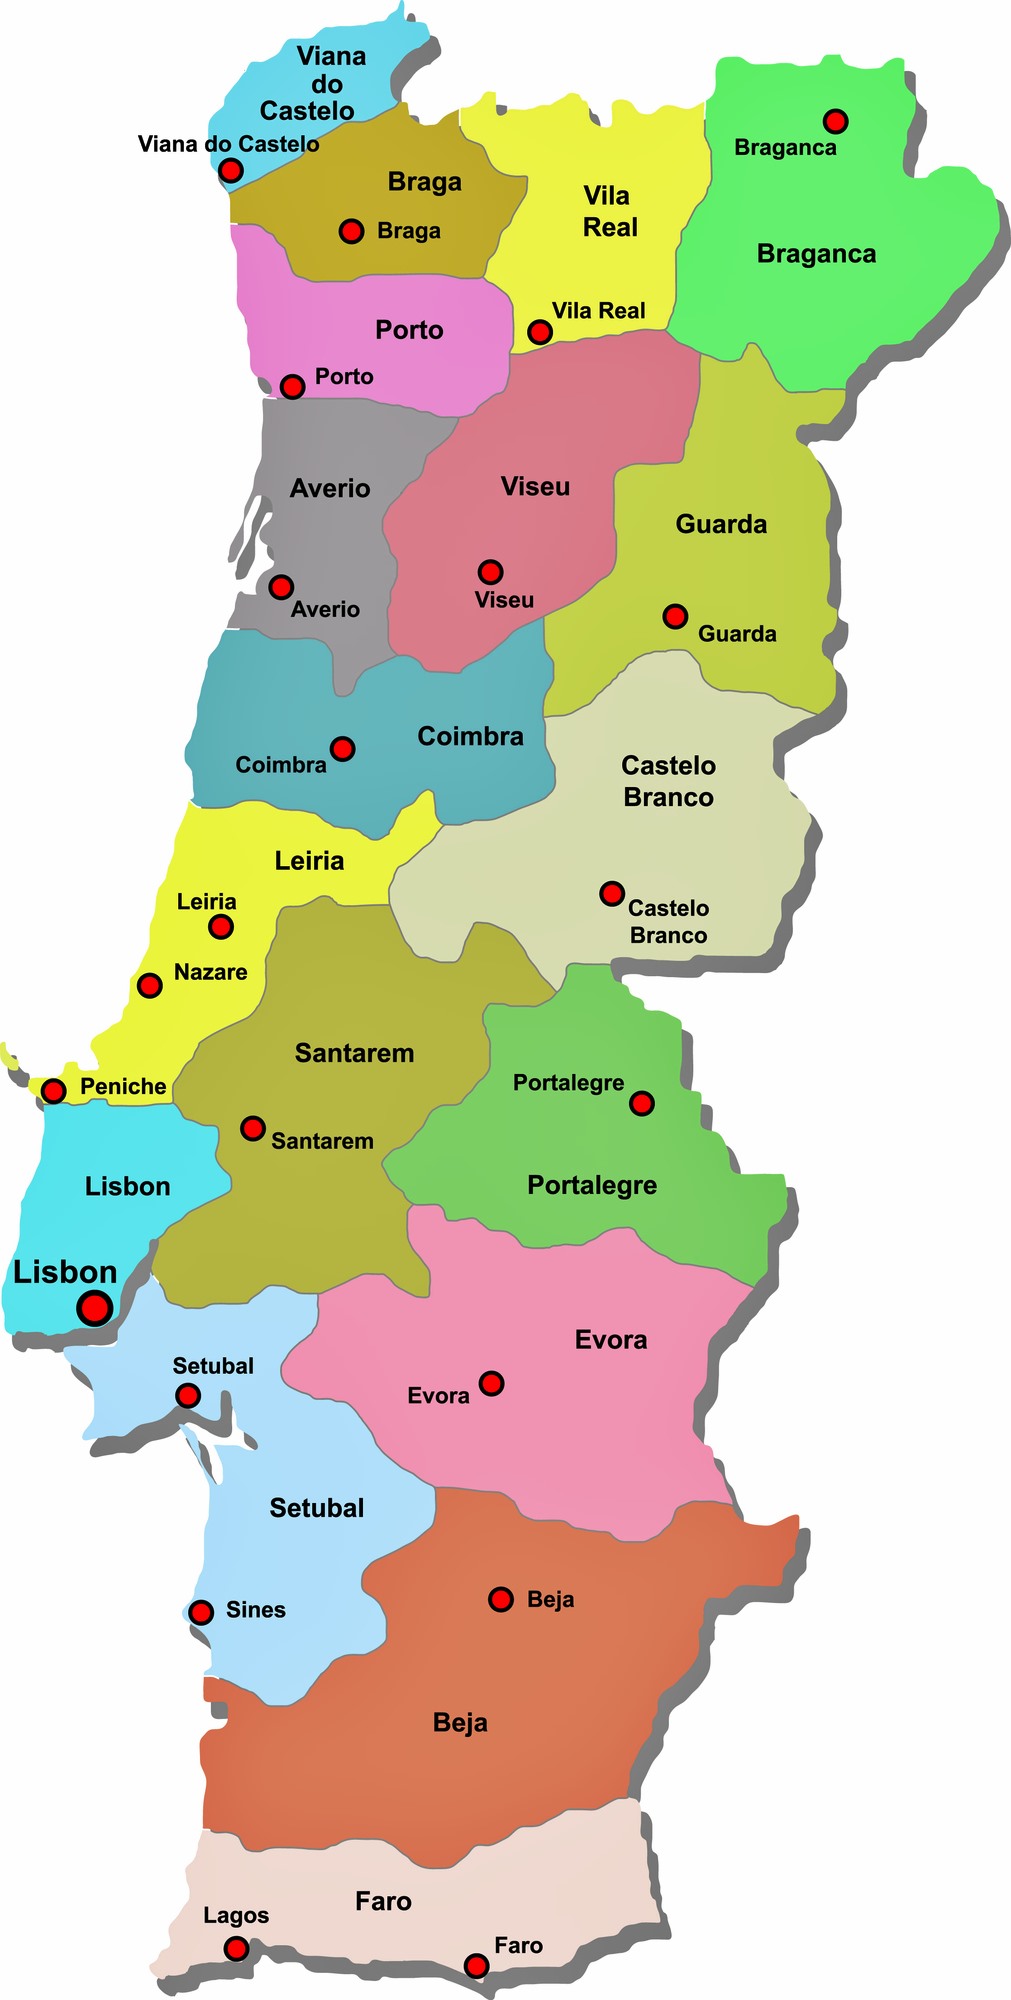 Mapa de las regiones de Portugal, Portugal Turismo (shared via SlingPic)